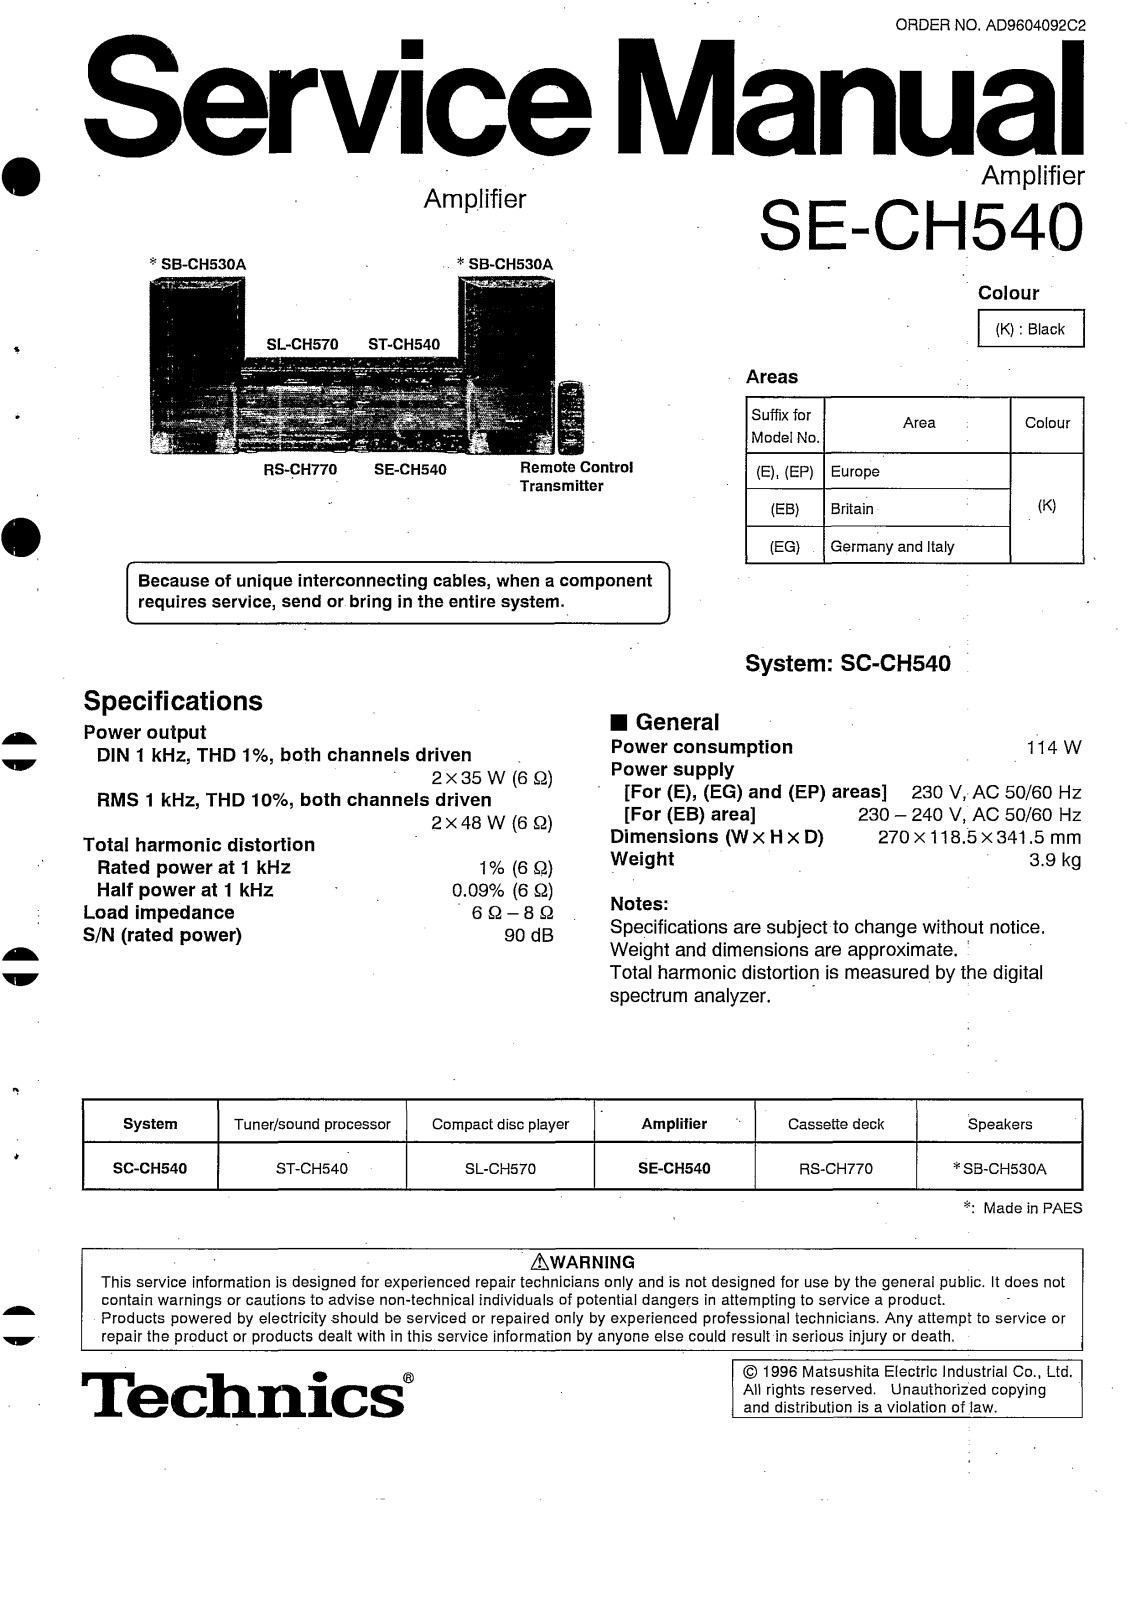 Technics SE-CH540 Schematic